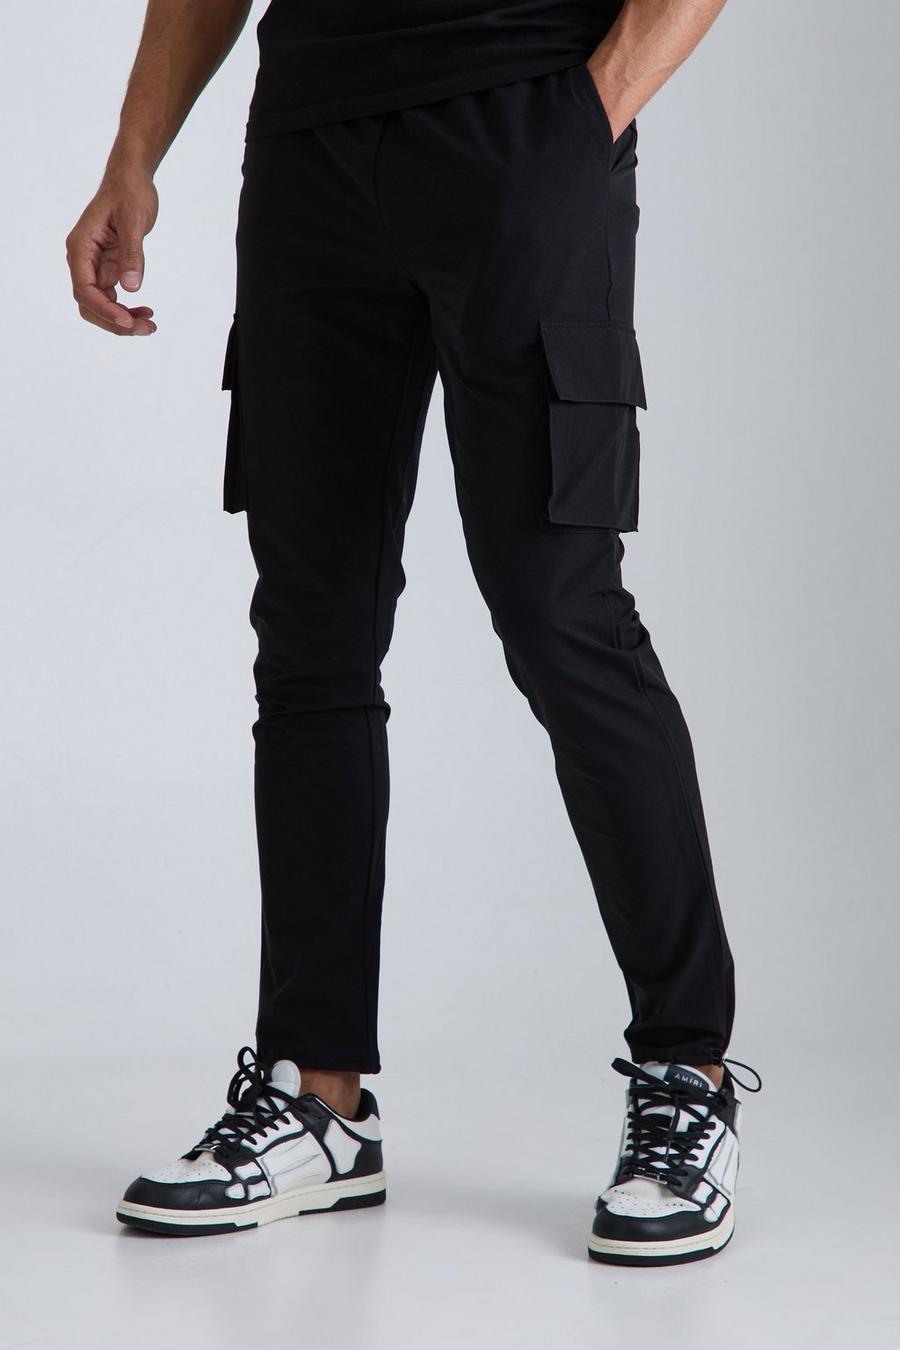 Pantaloni Cargo Skinny Fit in Stretch tecnico leggero elasticizzato, Black